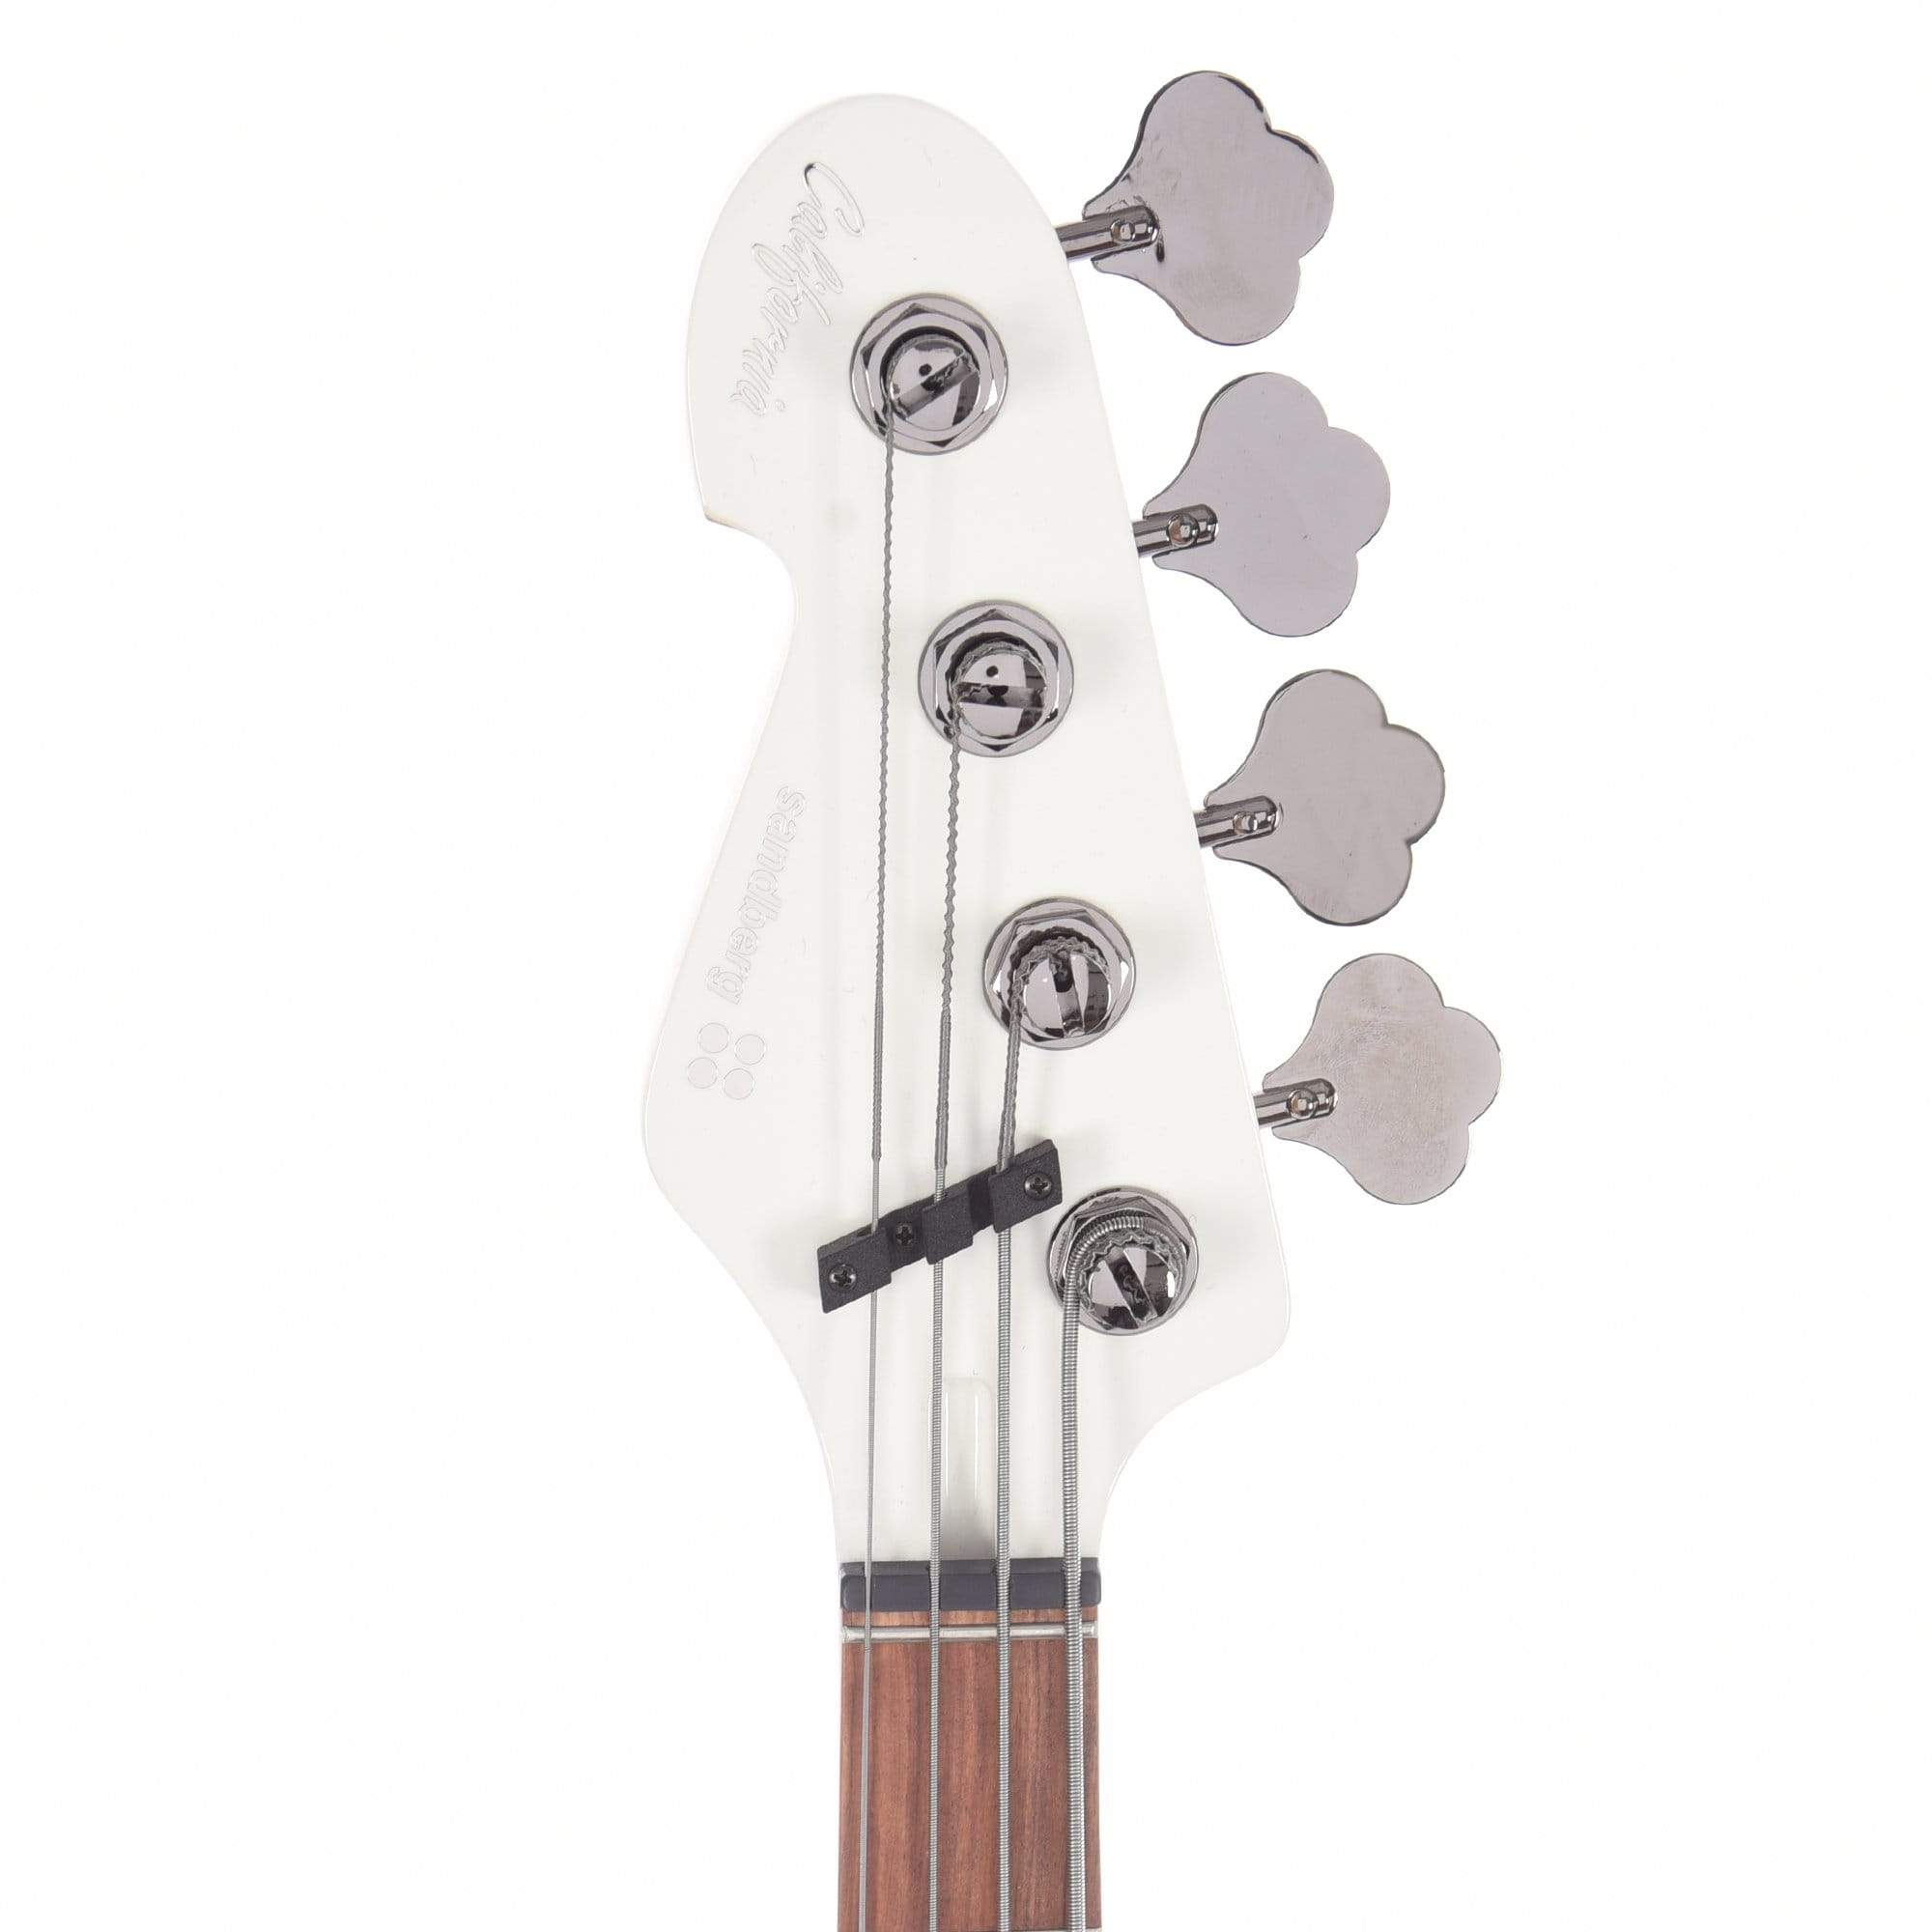 Sandberg California VM4 Virgin White High Gloss LEFTY Bass Guitars / 4-String